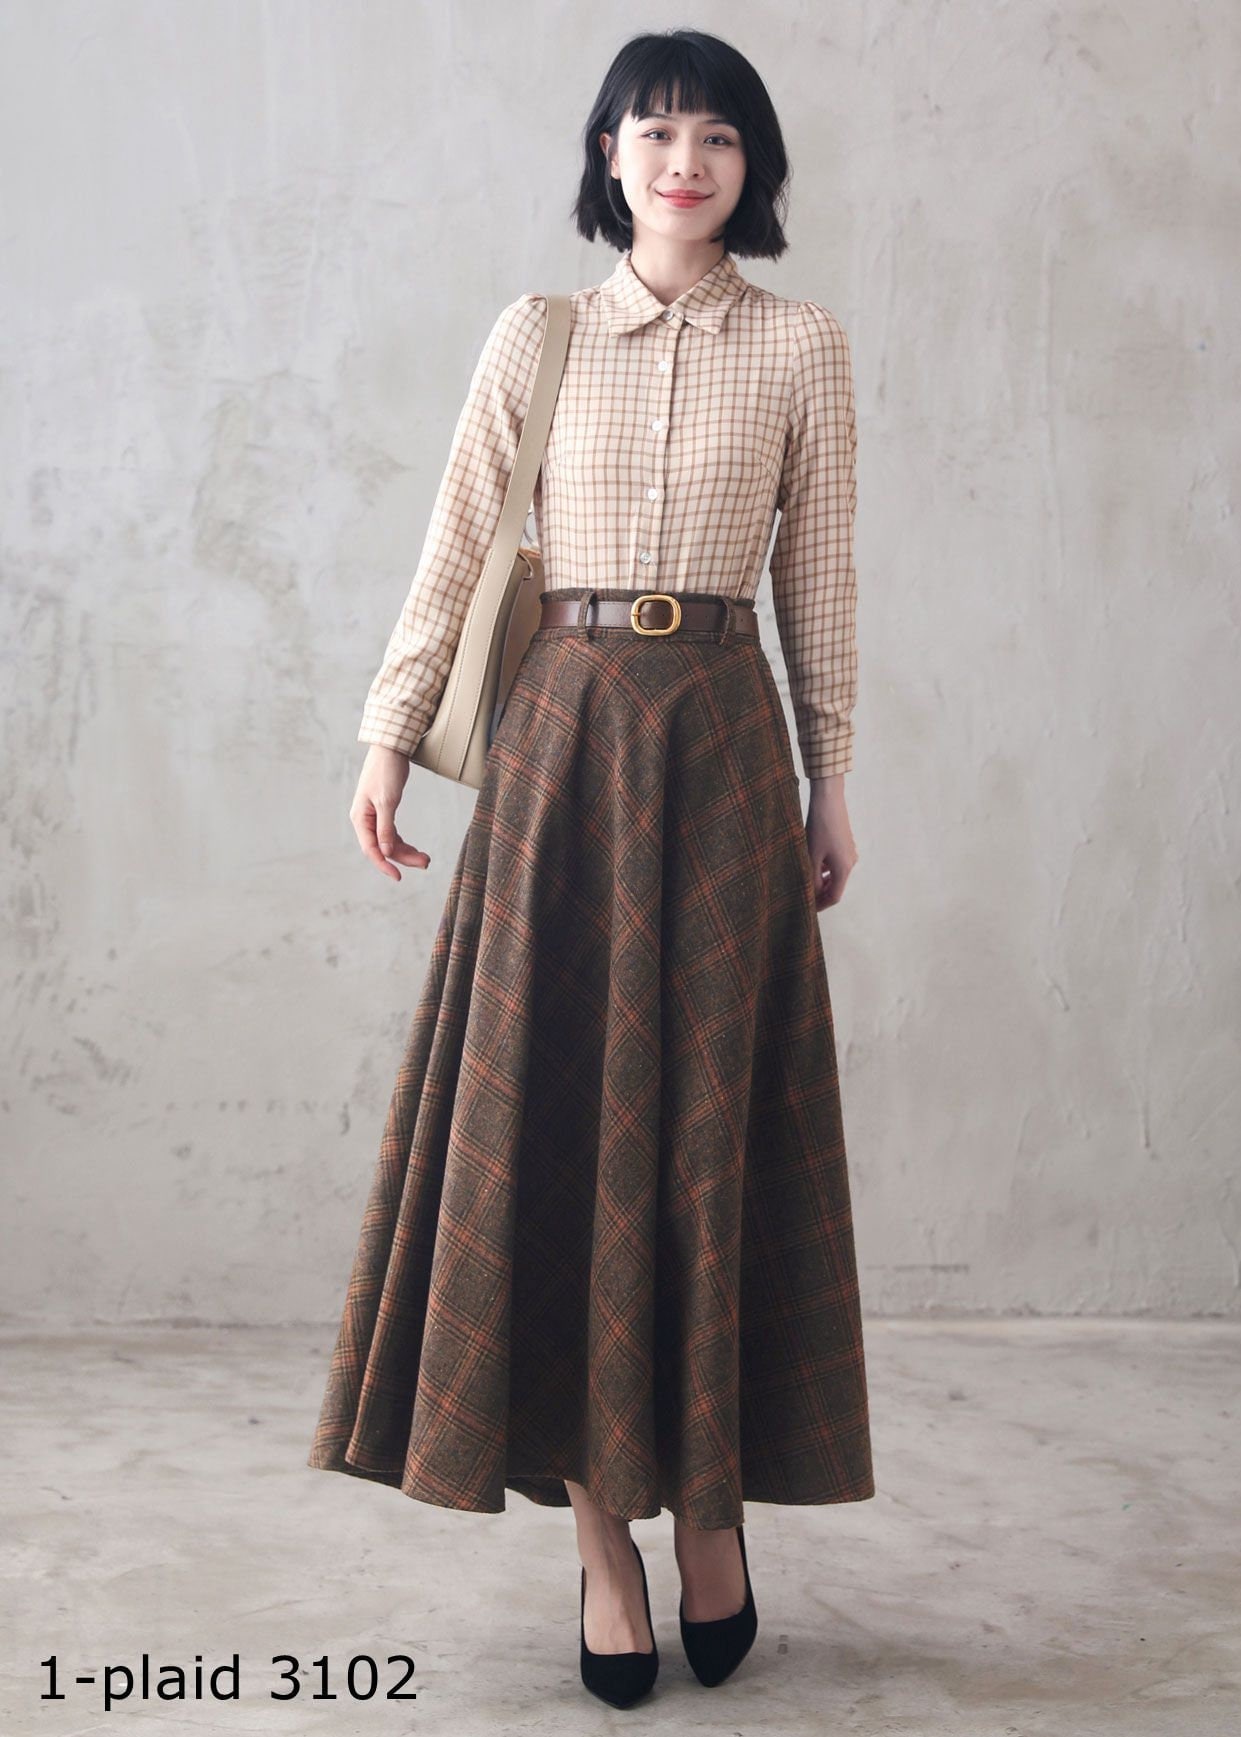 Wool Skirt, Long Wool Plaid Skirt, Tartan Wool Maxi Skirt, Vintage Inspired  Swing Skirt, A Line Flared Skirt, Full Fall Winter Skirt 3102 